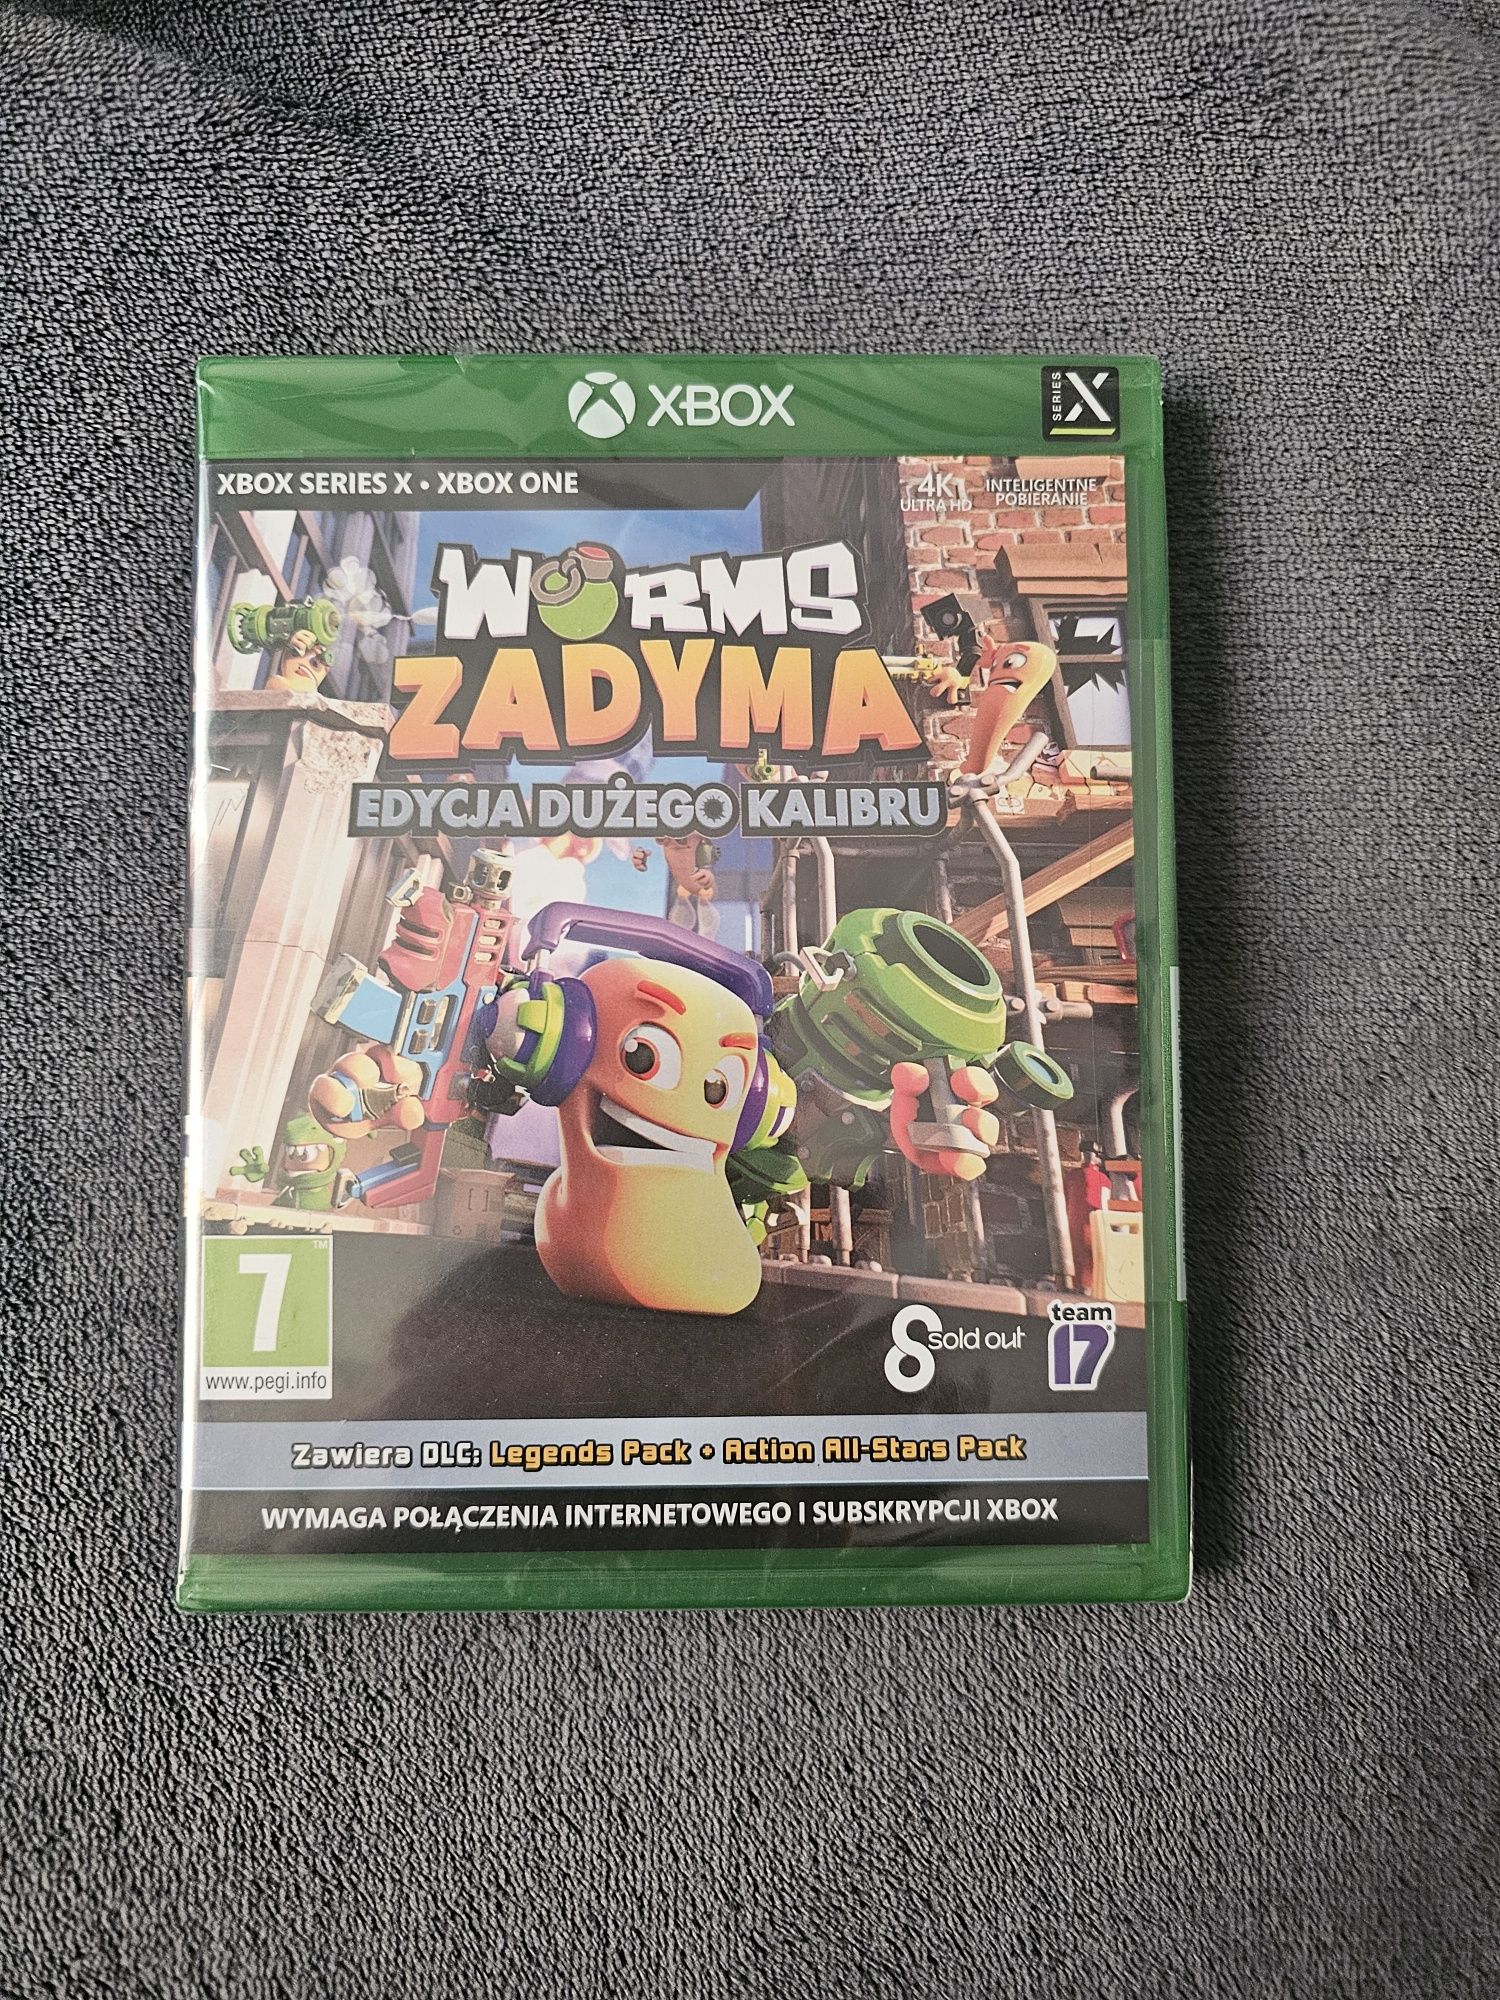 Worms Zadyma Edycja Dużego Kalibru Xbox NOWA